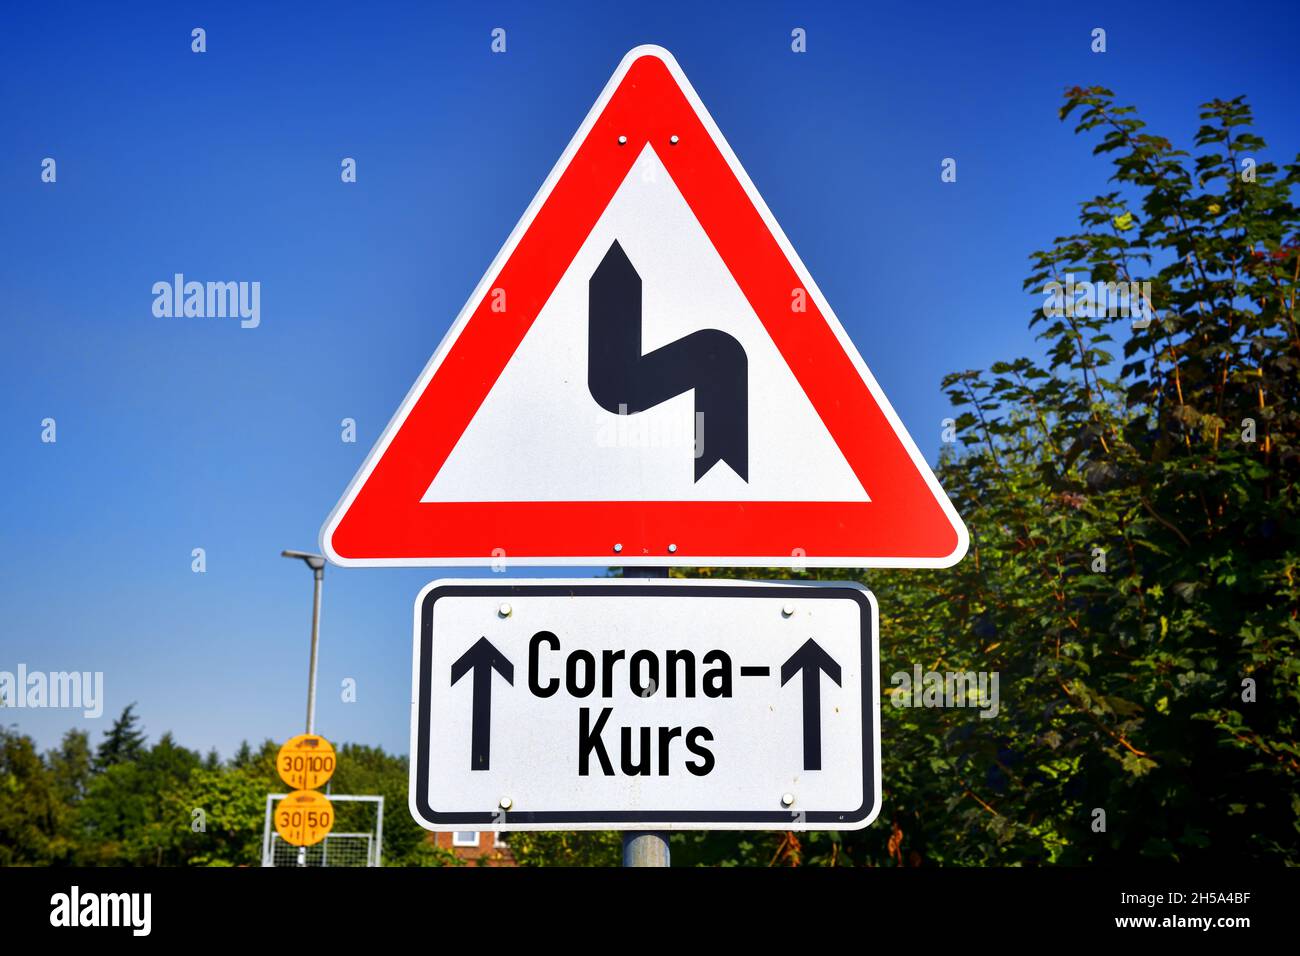 FOTOMONTAGE, Schild mit Kurvensymbol und Aufschrift Corona-Kurs, Symbolfoto fuer Schlingerkurs in der Corona-Pandemiebekaempfung Stock Photo